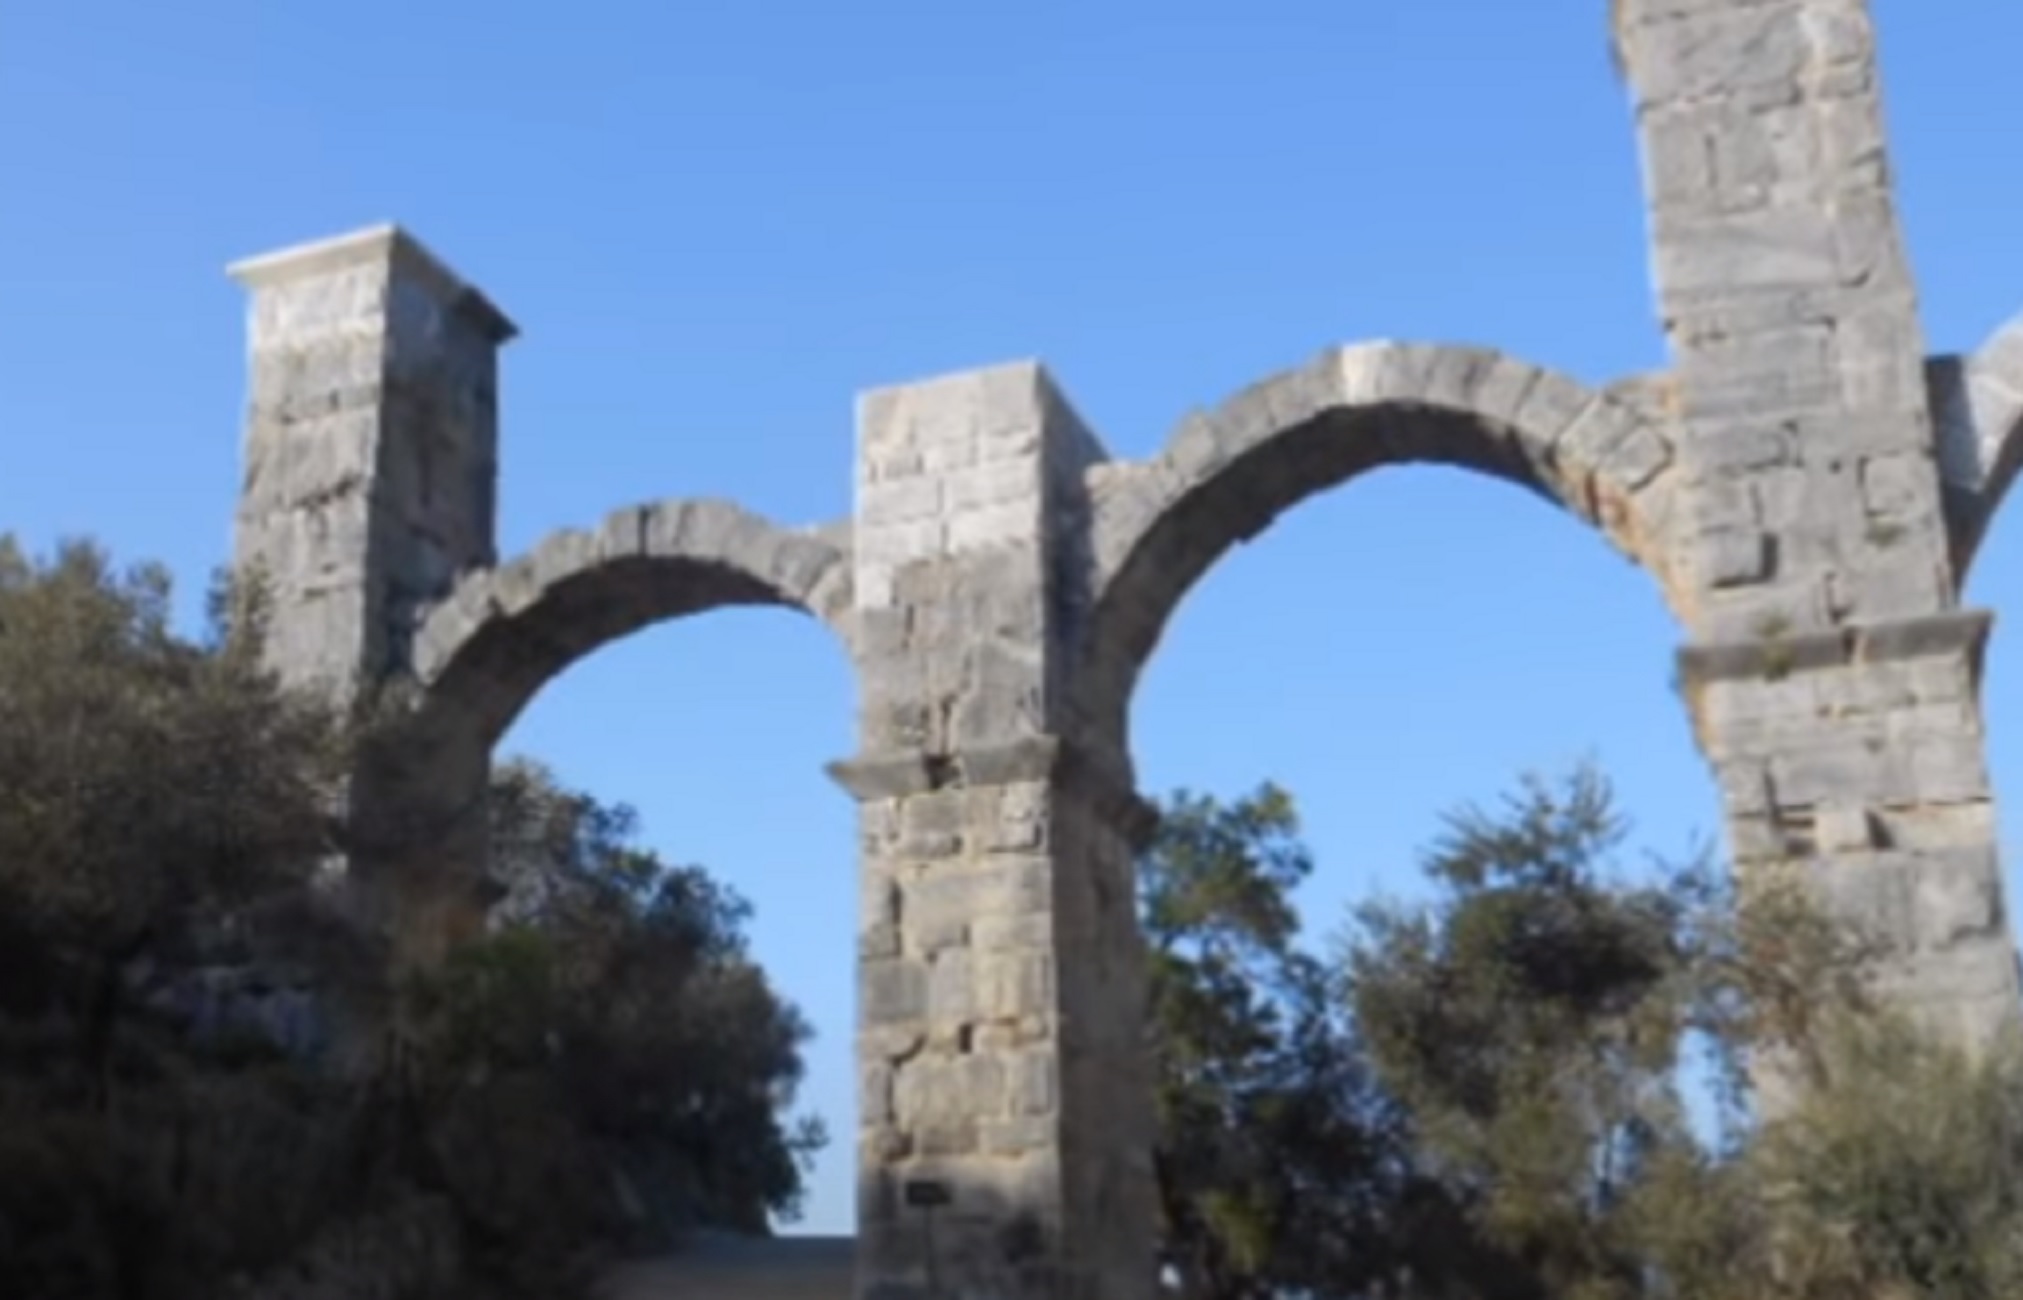 Λέσβος: Σοβαρά προβλήματα στο Ρωμαϊκό υδραγωγείο της Μόριας μετά το πέρασμα της κακοκαιρίας